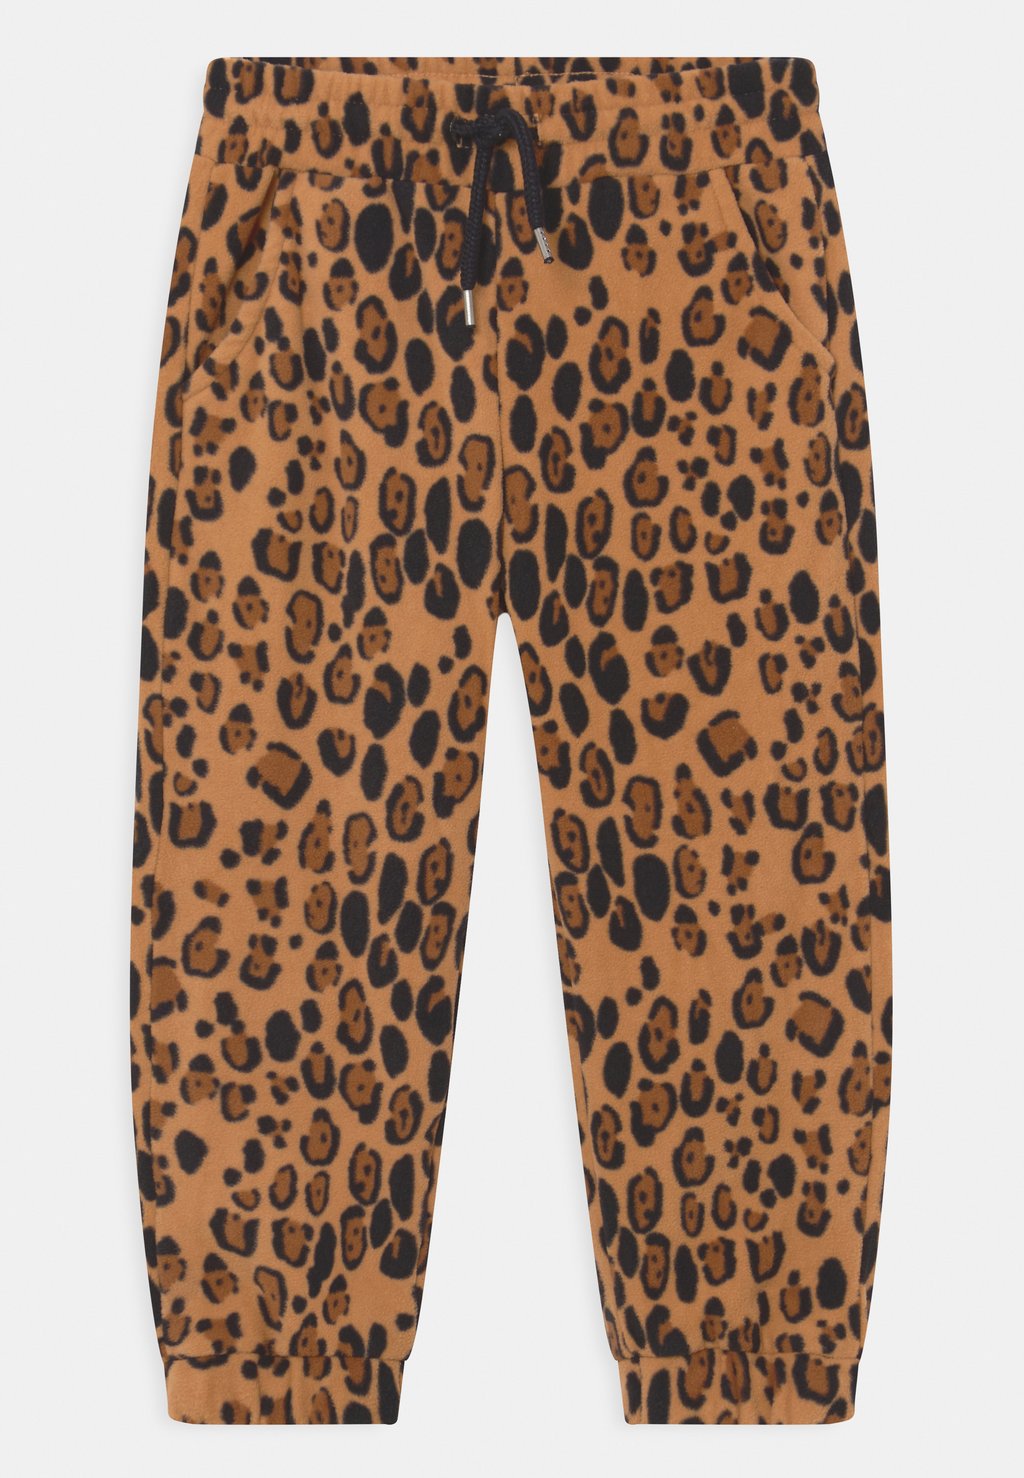 Спортивные брюки Leopard Trousers Unisex Mini Rodini, бежевый цена и фото